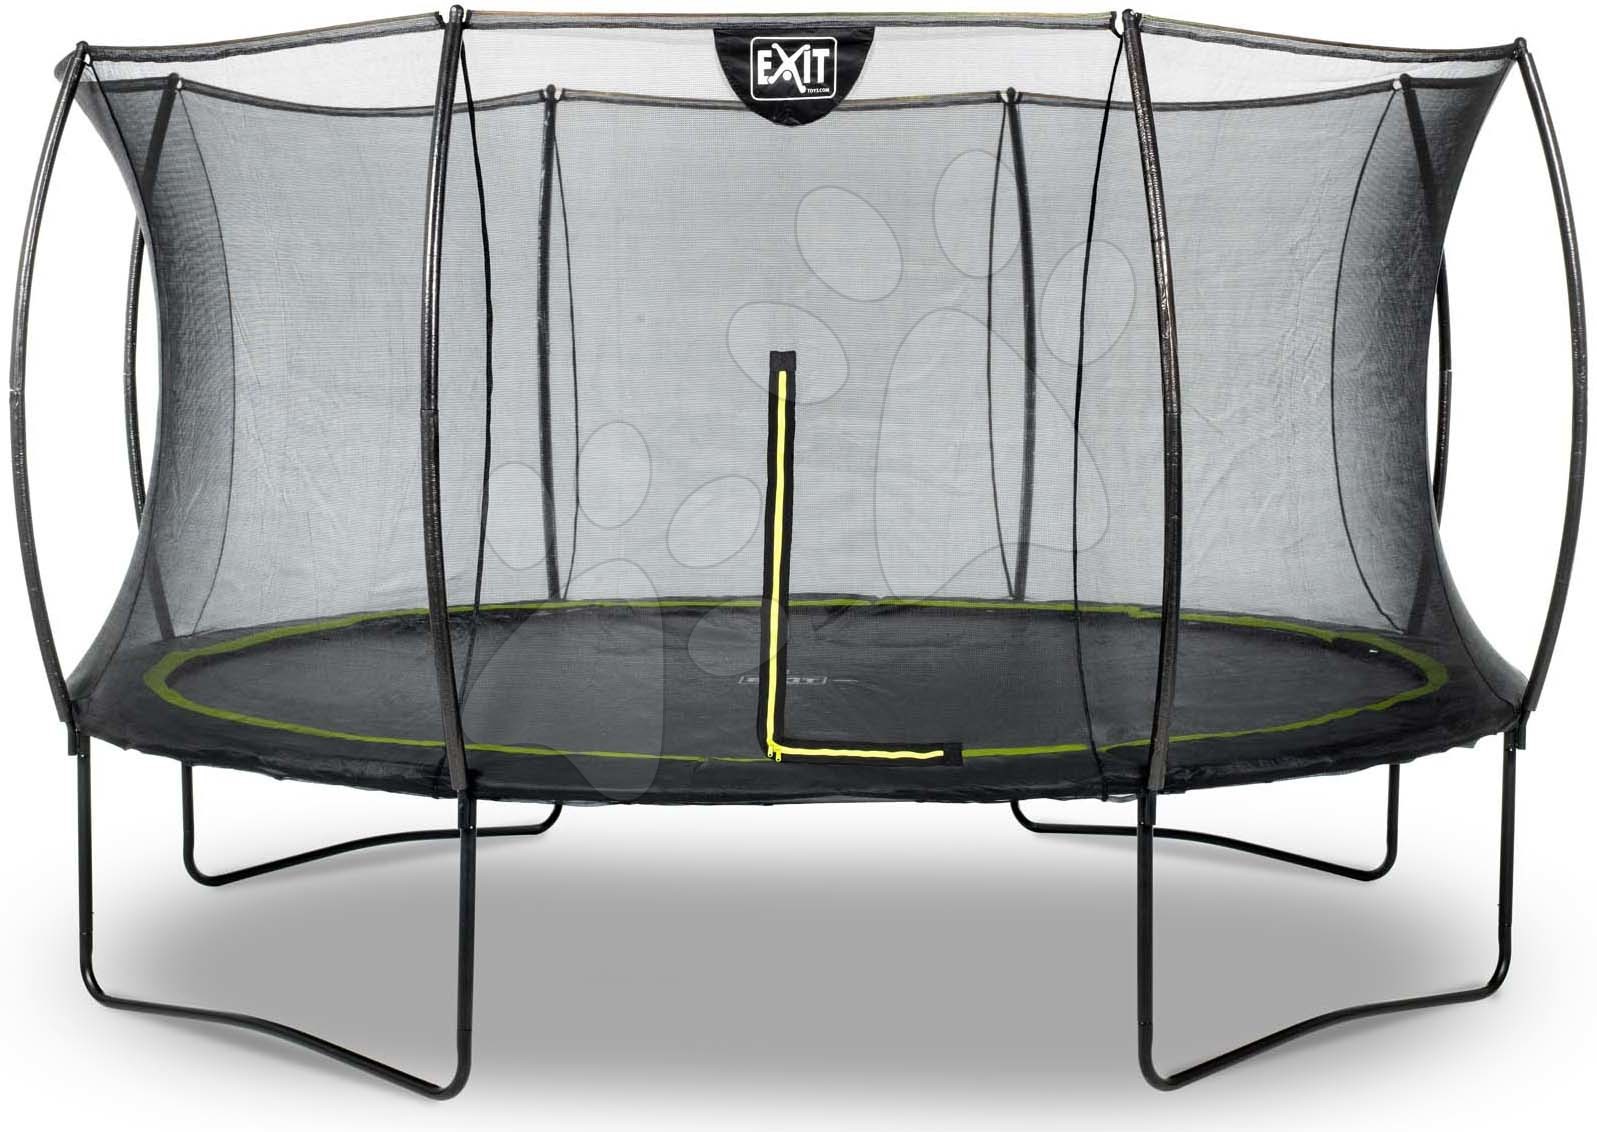 Trampolína s ochrannou sieťou Silhouette trampoline Exit Toys okrúhla priemer 366 cm čierna